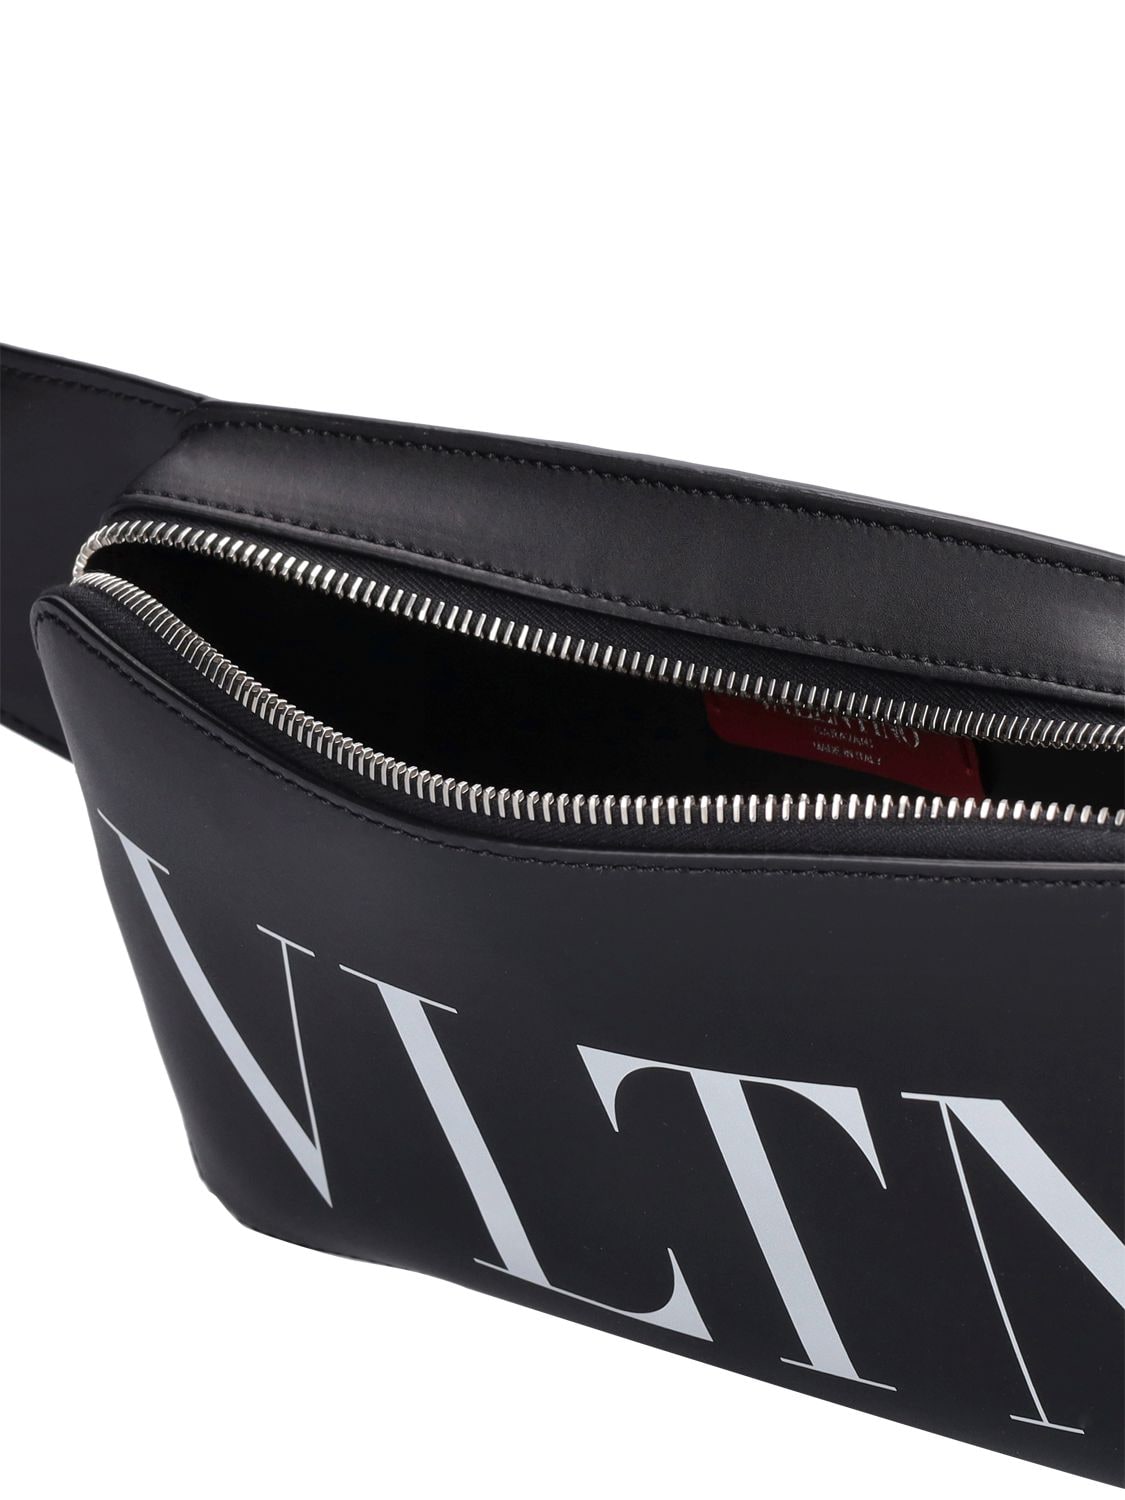 Shop Valentino Vltn Leather Belt Bag In Black,white